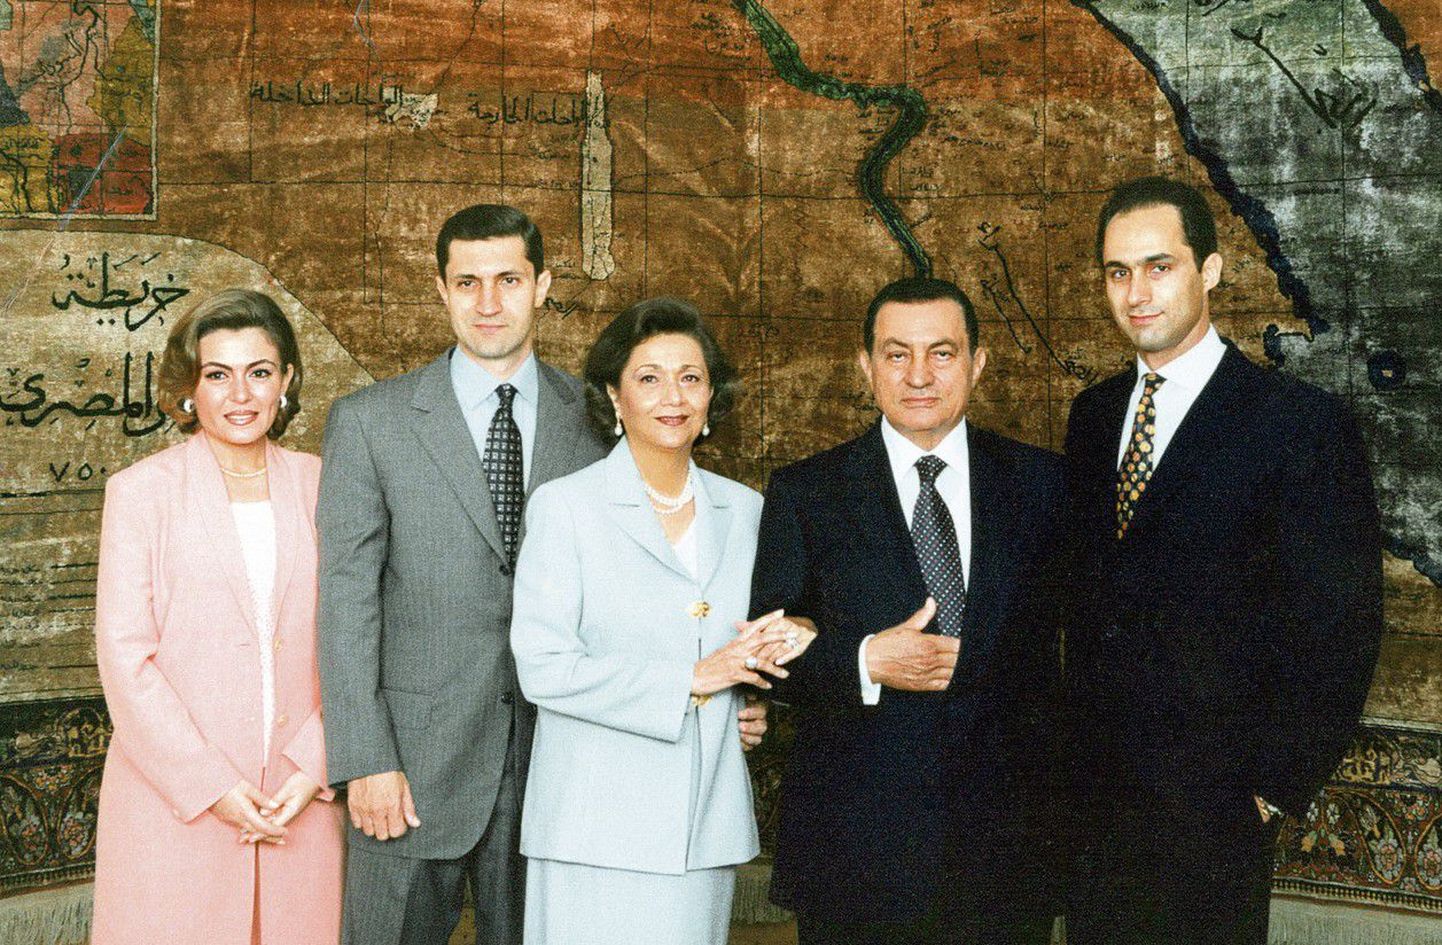 Гамаль Мубарак на этом семейном портрете крайний справа.